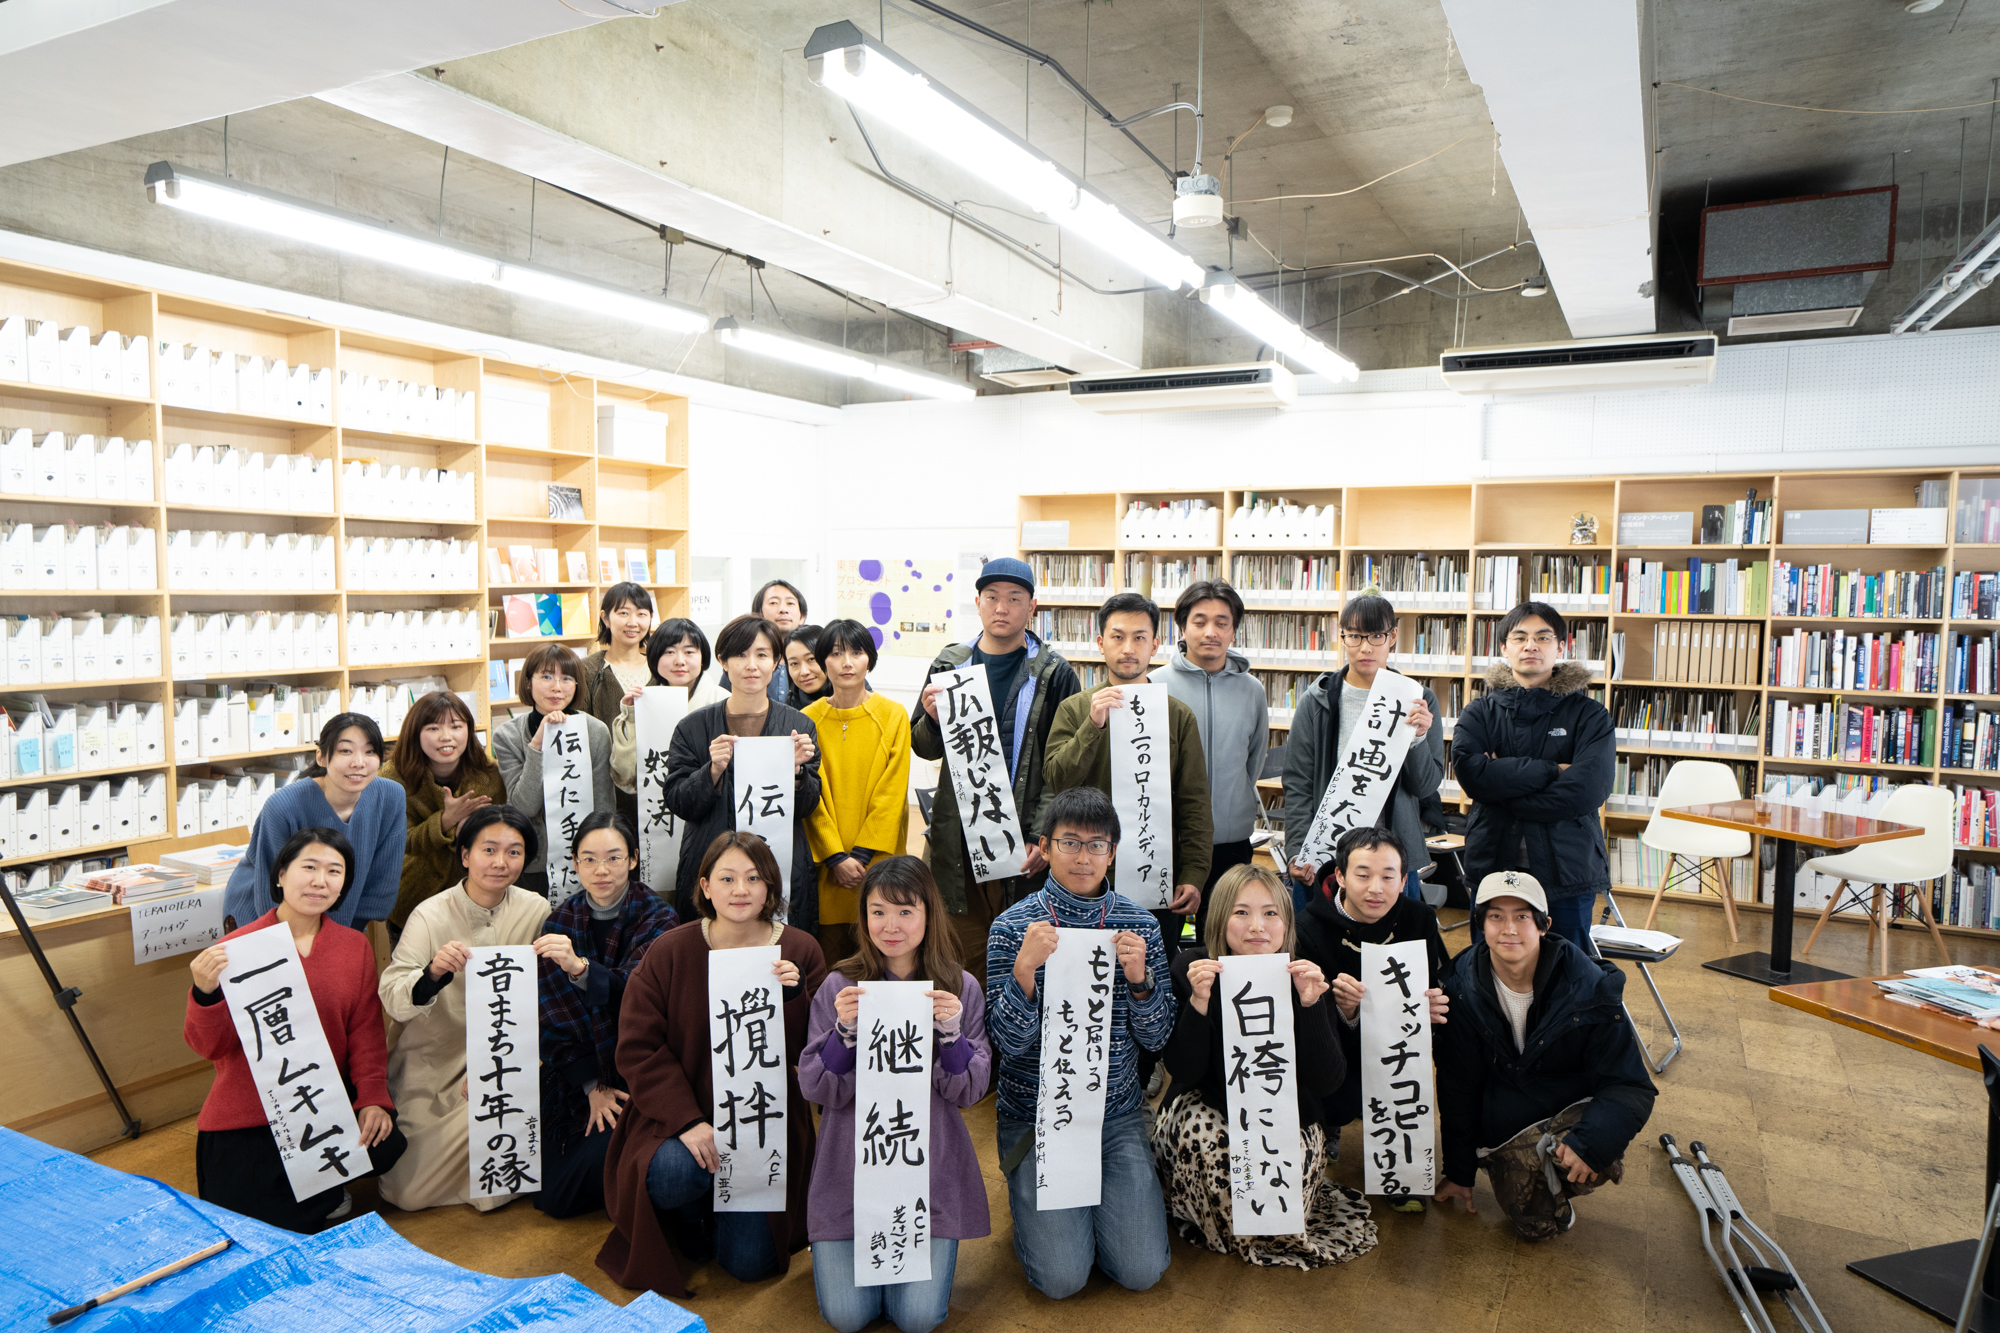 アーツカウンシル東京が主催する「事務局による事務局のためのジムのような勉強会（愛称「ジムジム会」）」